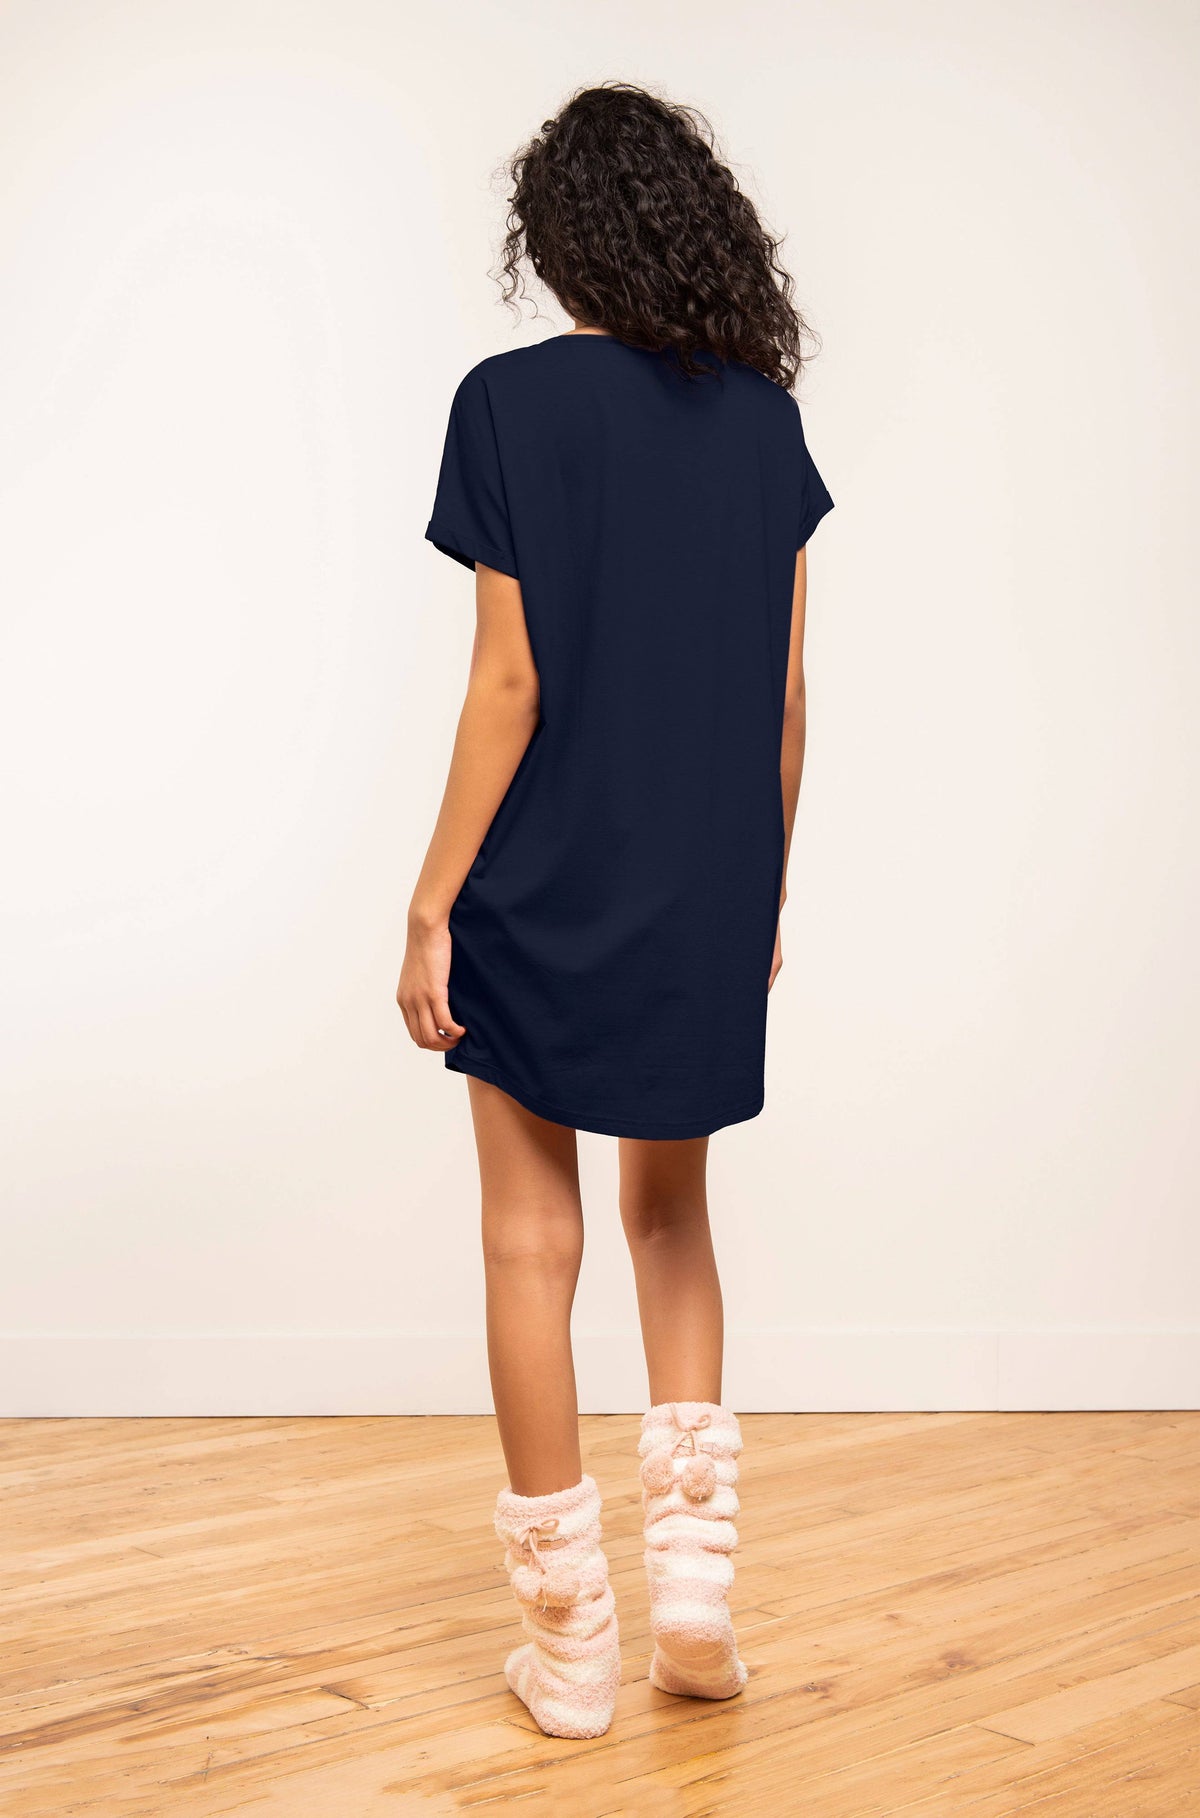 T-Shirt Dress - Navy Floral - LATTELOVE Co.